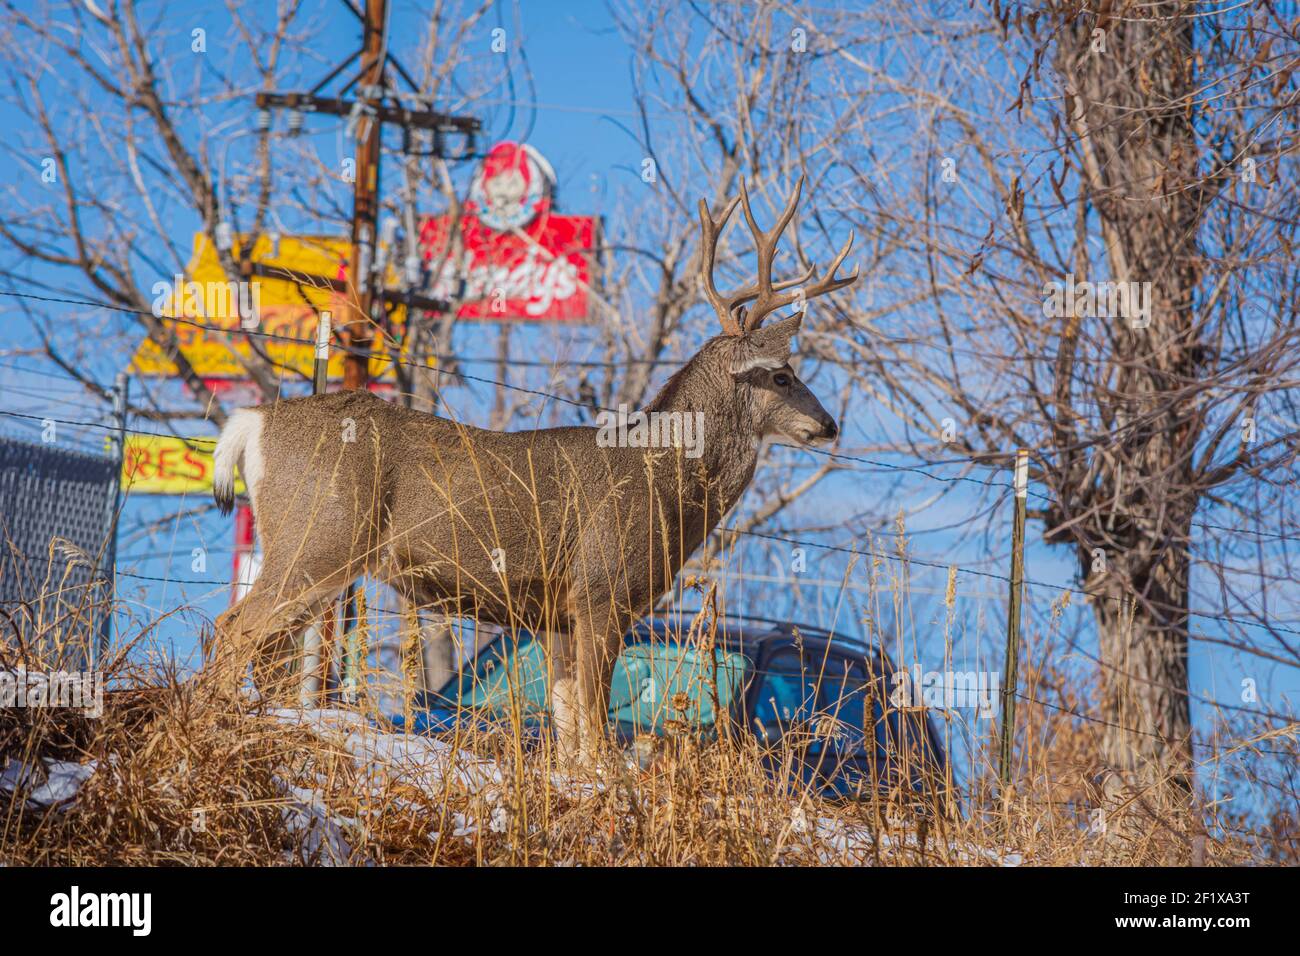 Large Mule Deer buck (Odocoileus hemionus) está en las afueras de la ciudad de Castle Rock Colorado USA. Los letreros del restaurante se muestran en el fondo. Foto de stock